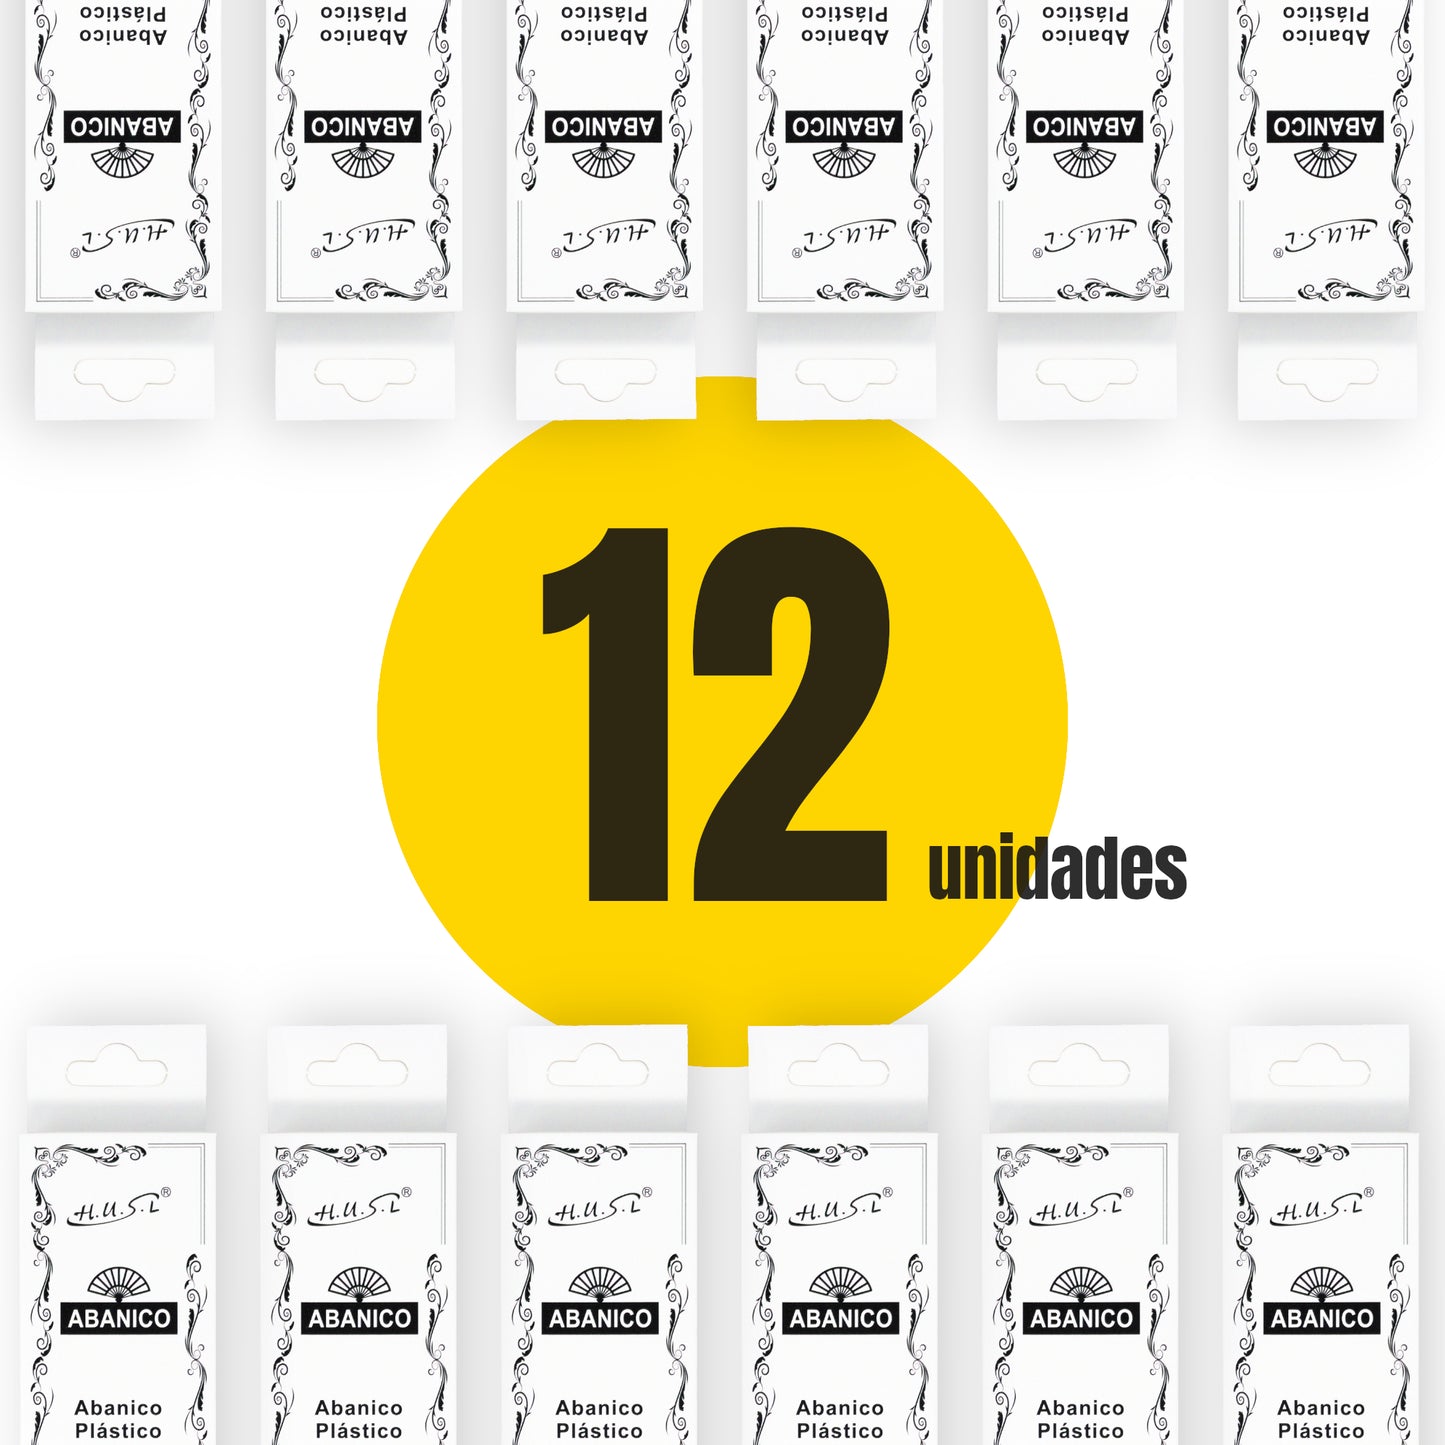 HOME UNIVERSAL Pack 12 Abanicos de Plástico con Empaquetado Individual para Regalar, Abanicos para Bodas, Comuniones, Fiestas y Eventos (Rojo)